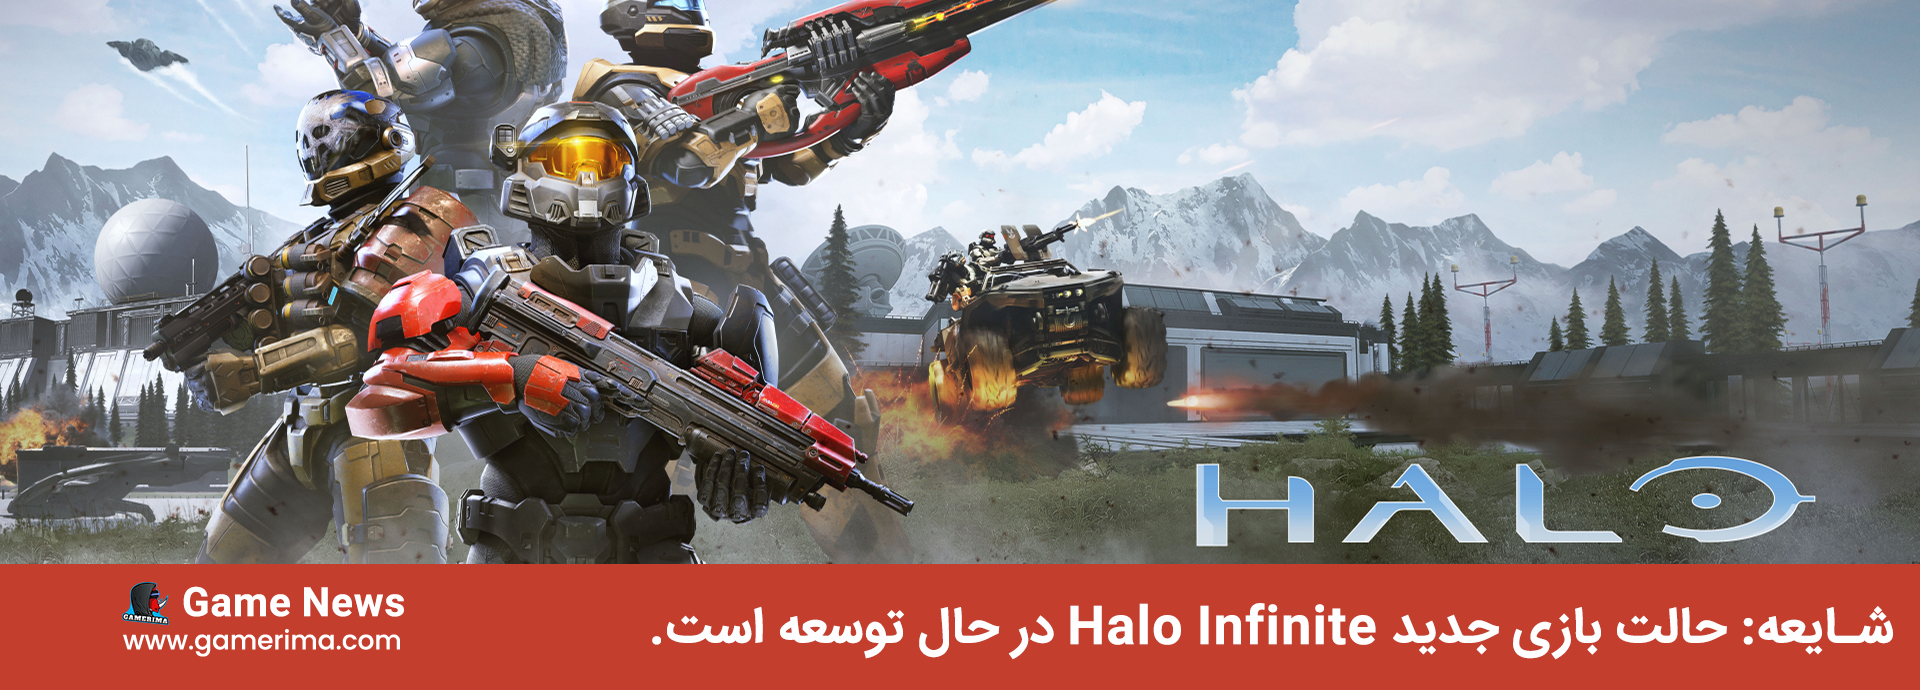 شایعه: حالت بازی جدید Halo Infinite در حال توسعه است.